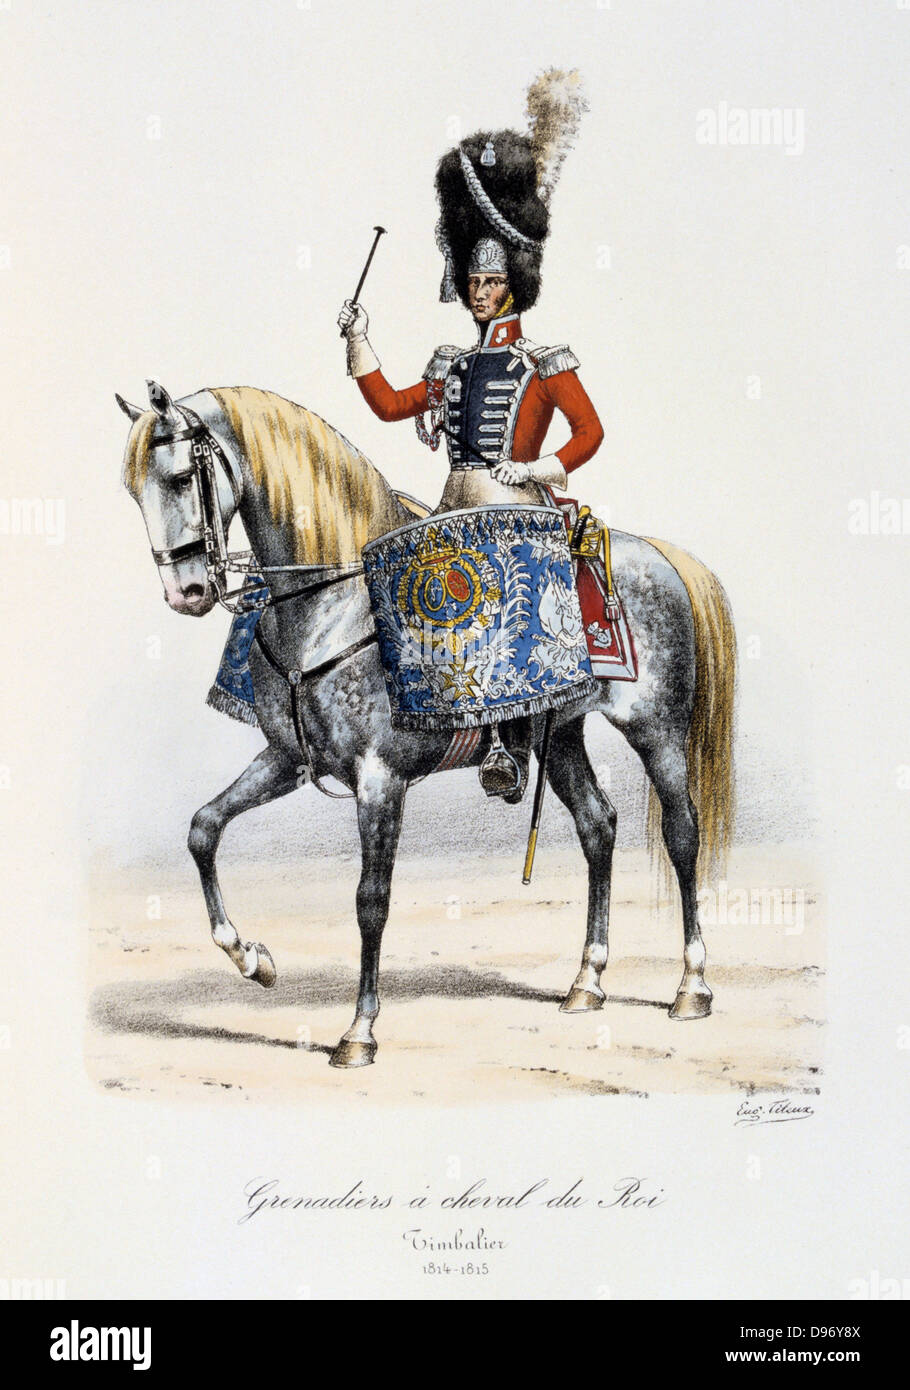 Drummer of the King's Mounted Grenadiers, 1814-1815. From 'Histoire de la maison militaire du Roi de 1814 a 1830' by Eugene Titeux, Paris, 1890. Stock Photo